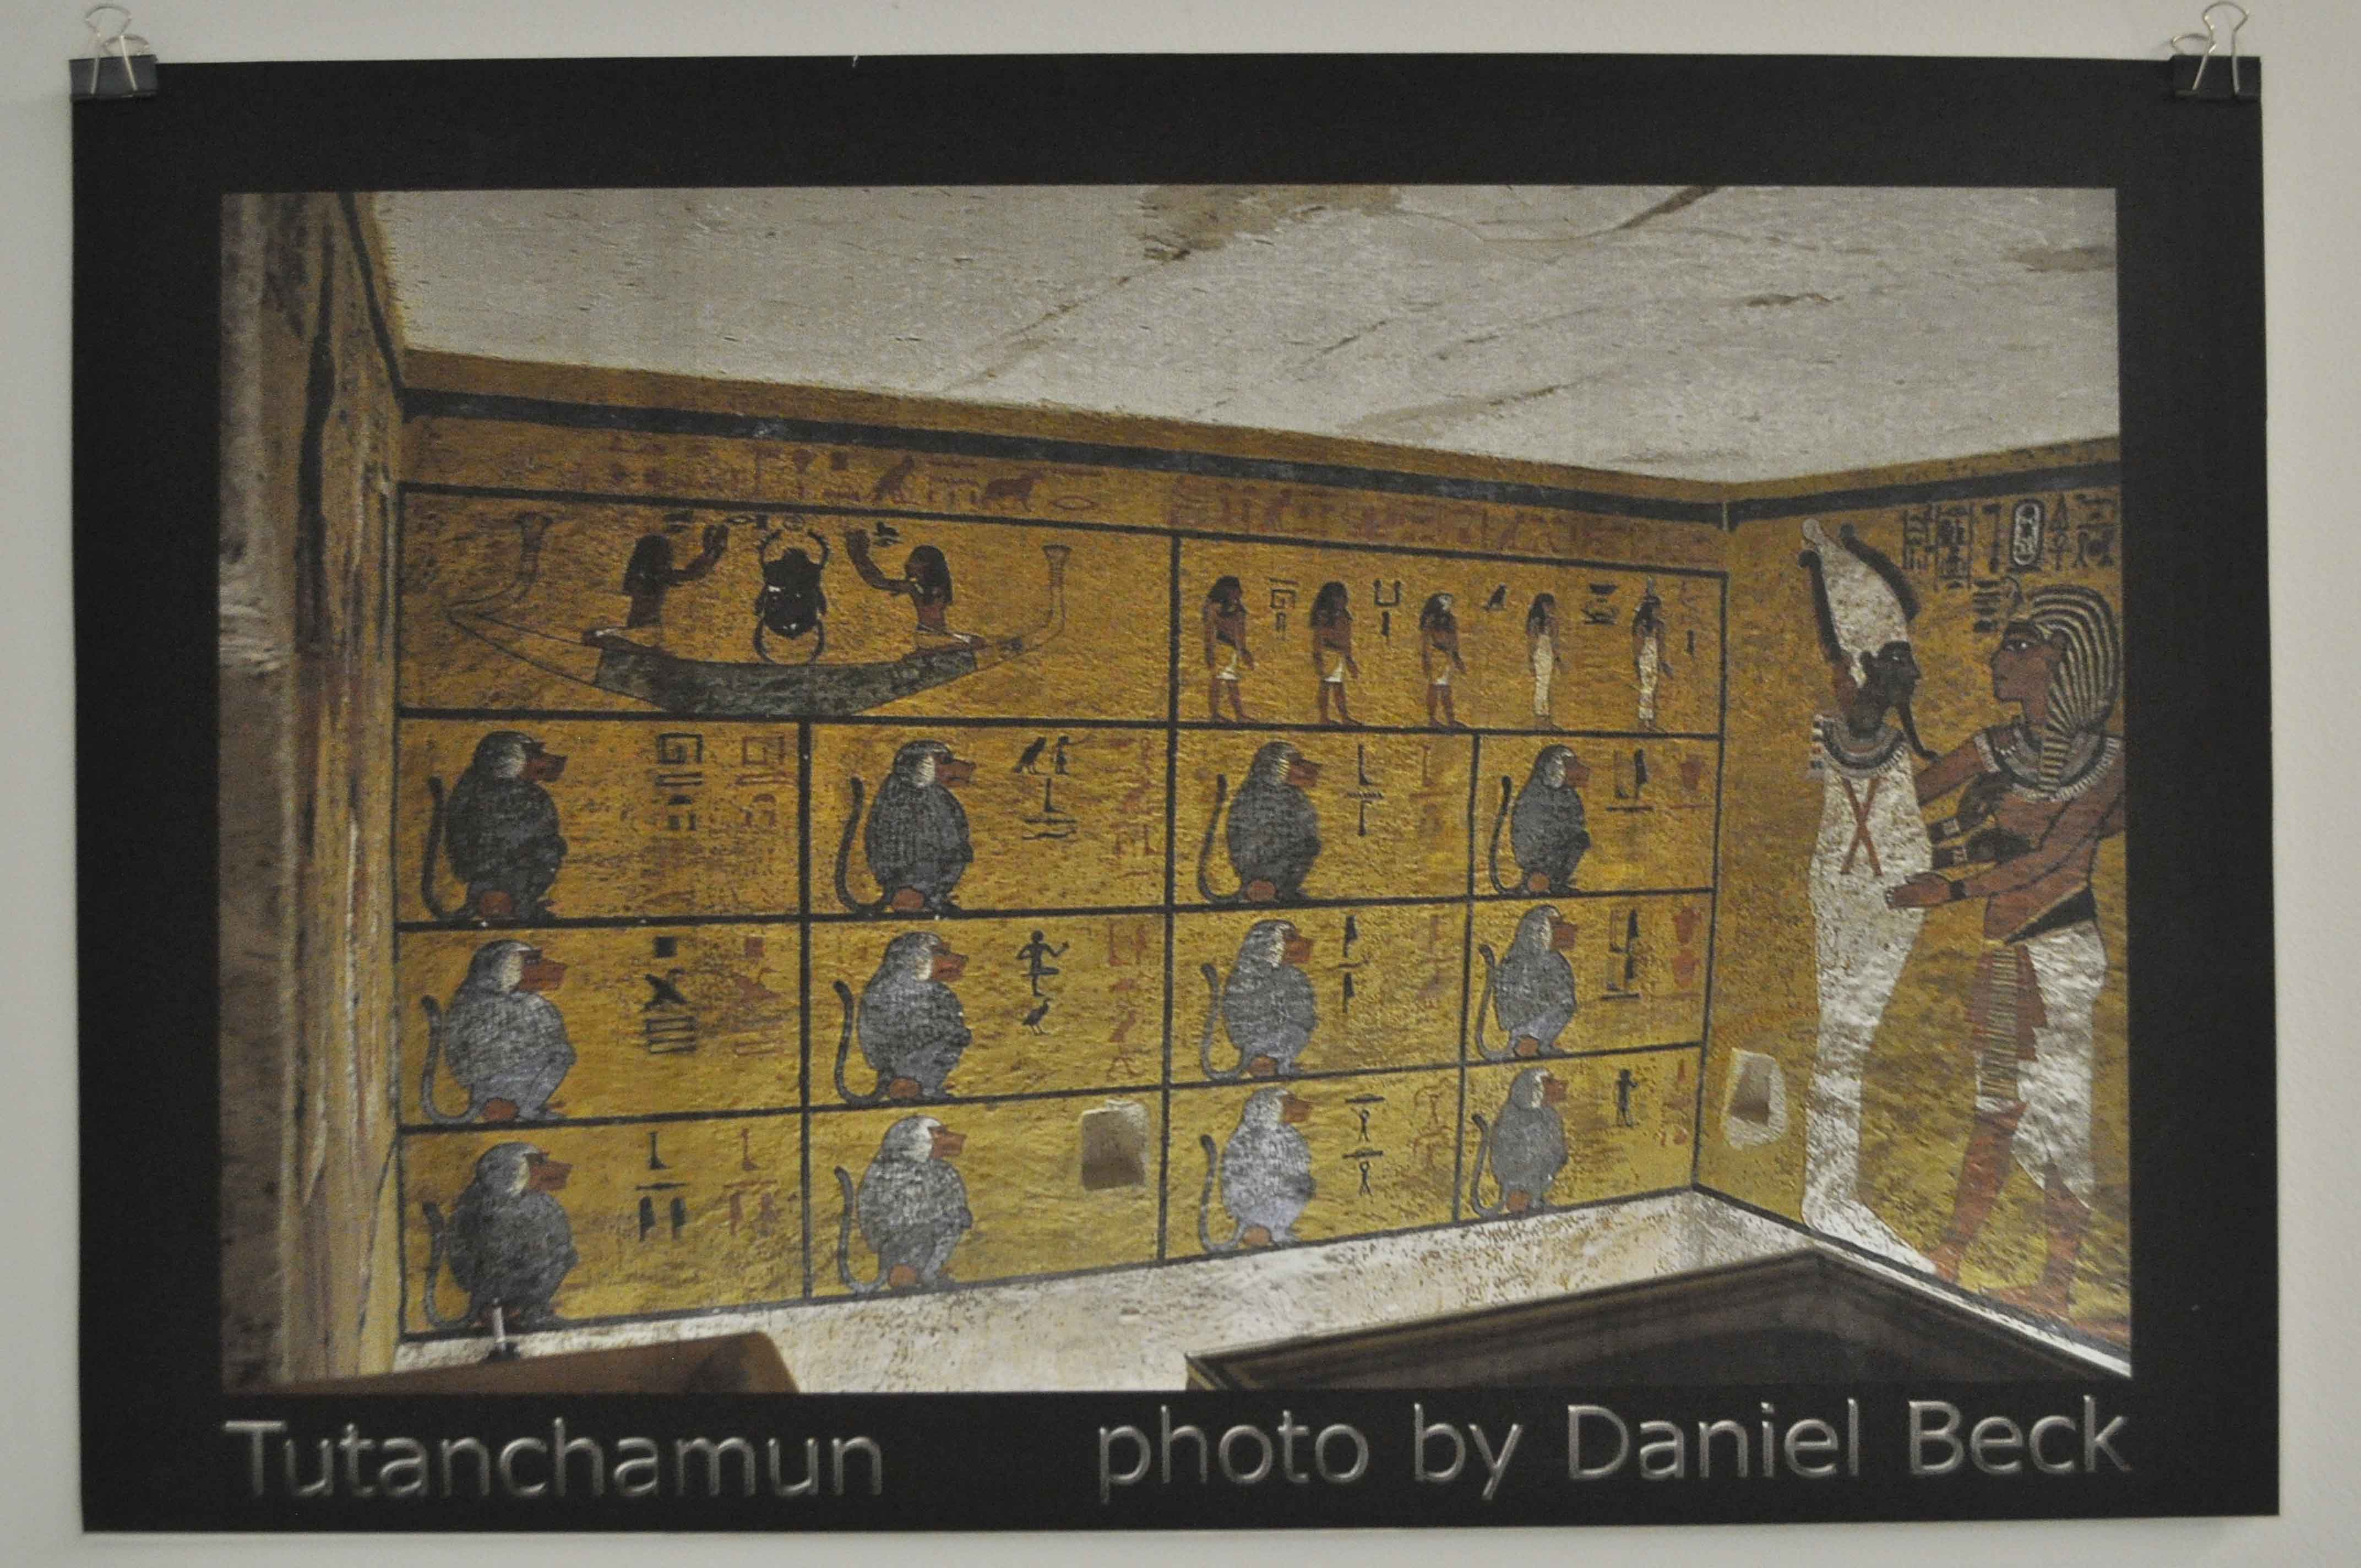   دانيال بيك مصور سويسري ينظم معرض لصور وادي الملوك بمكتبة مصر العامة بالأقصر (5)